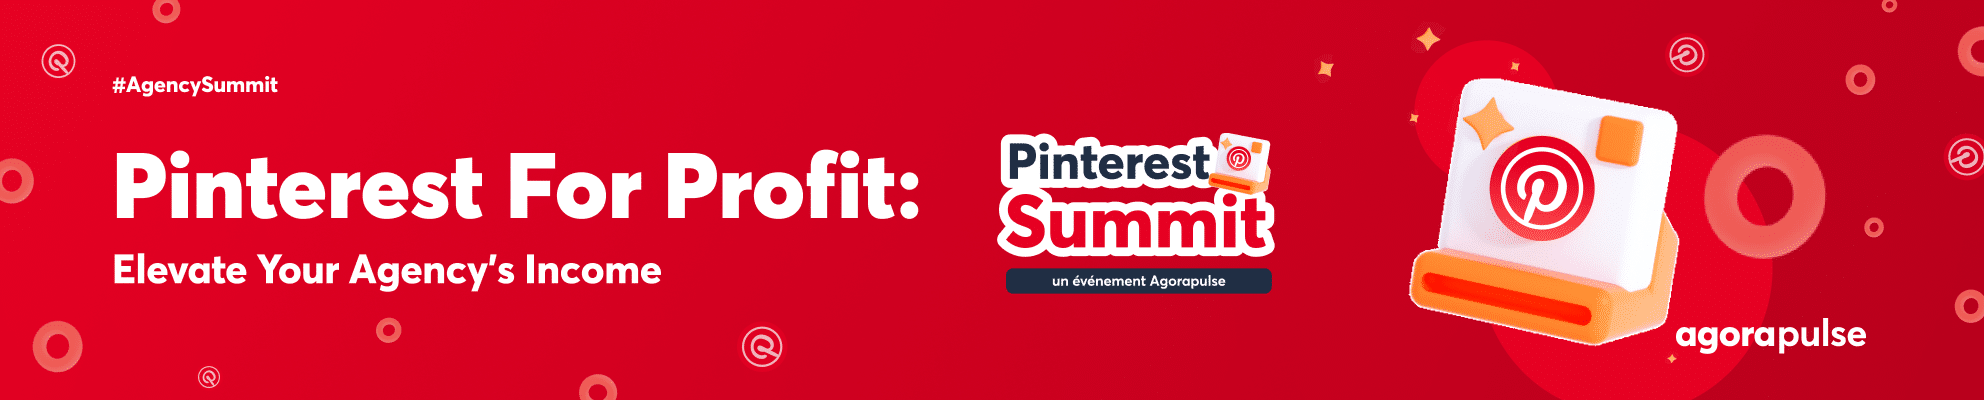 pinterest summit